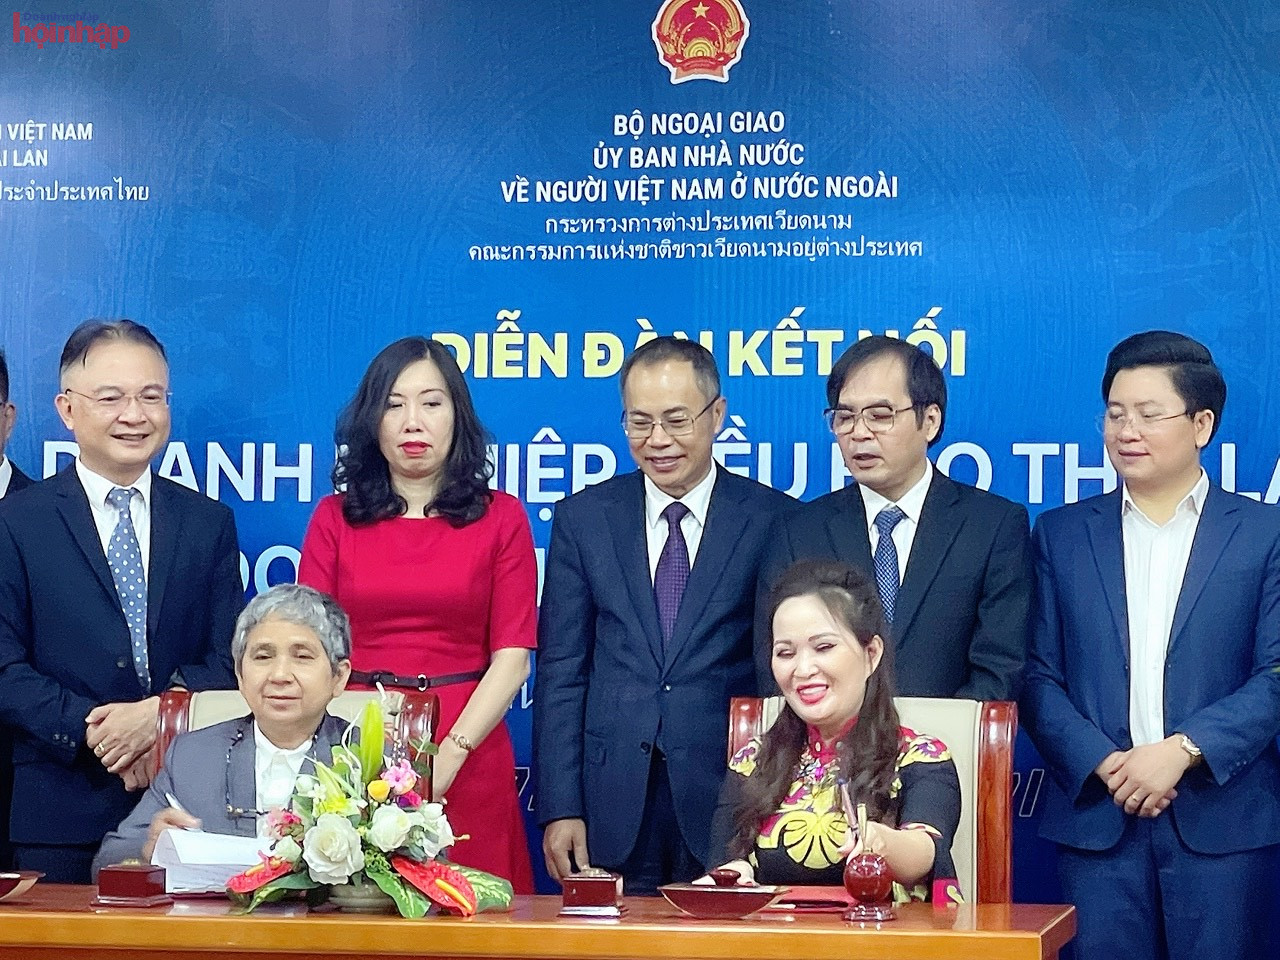 Ký kết hợp tác giữa doanh nghiệp Việt Nam và Thái Lan về may mặc (áo dài)